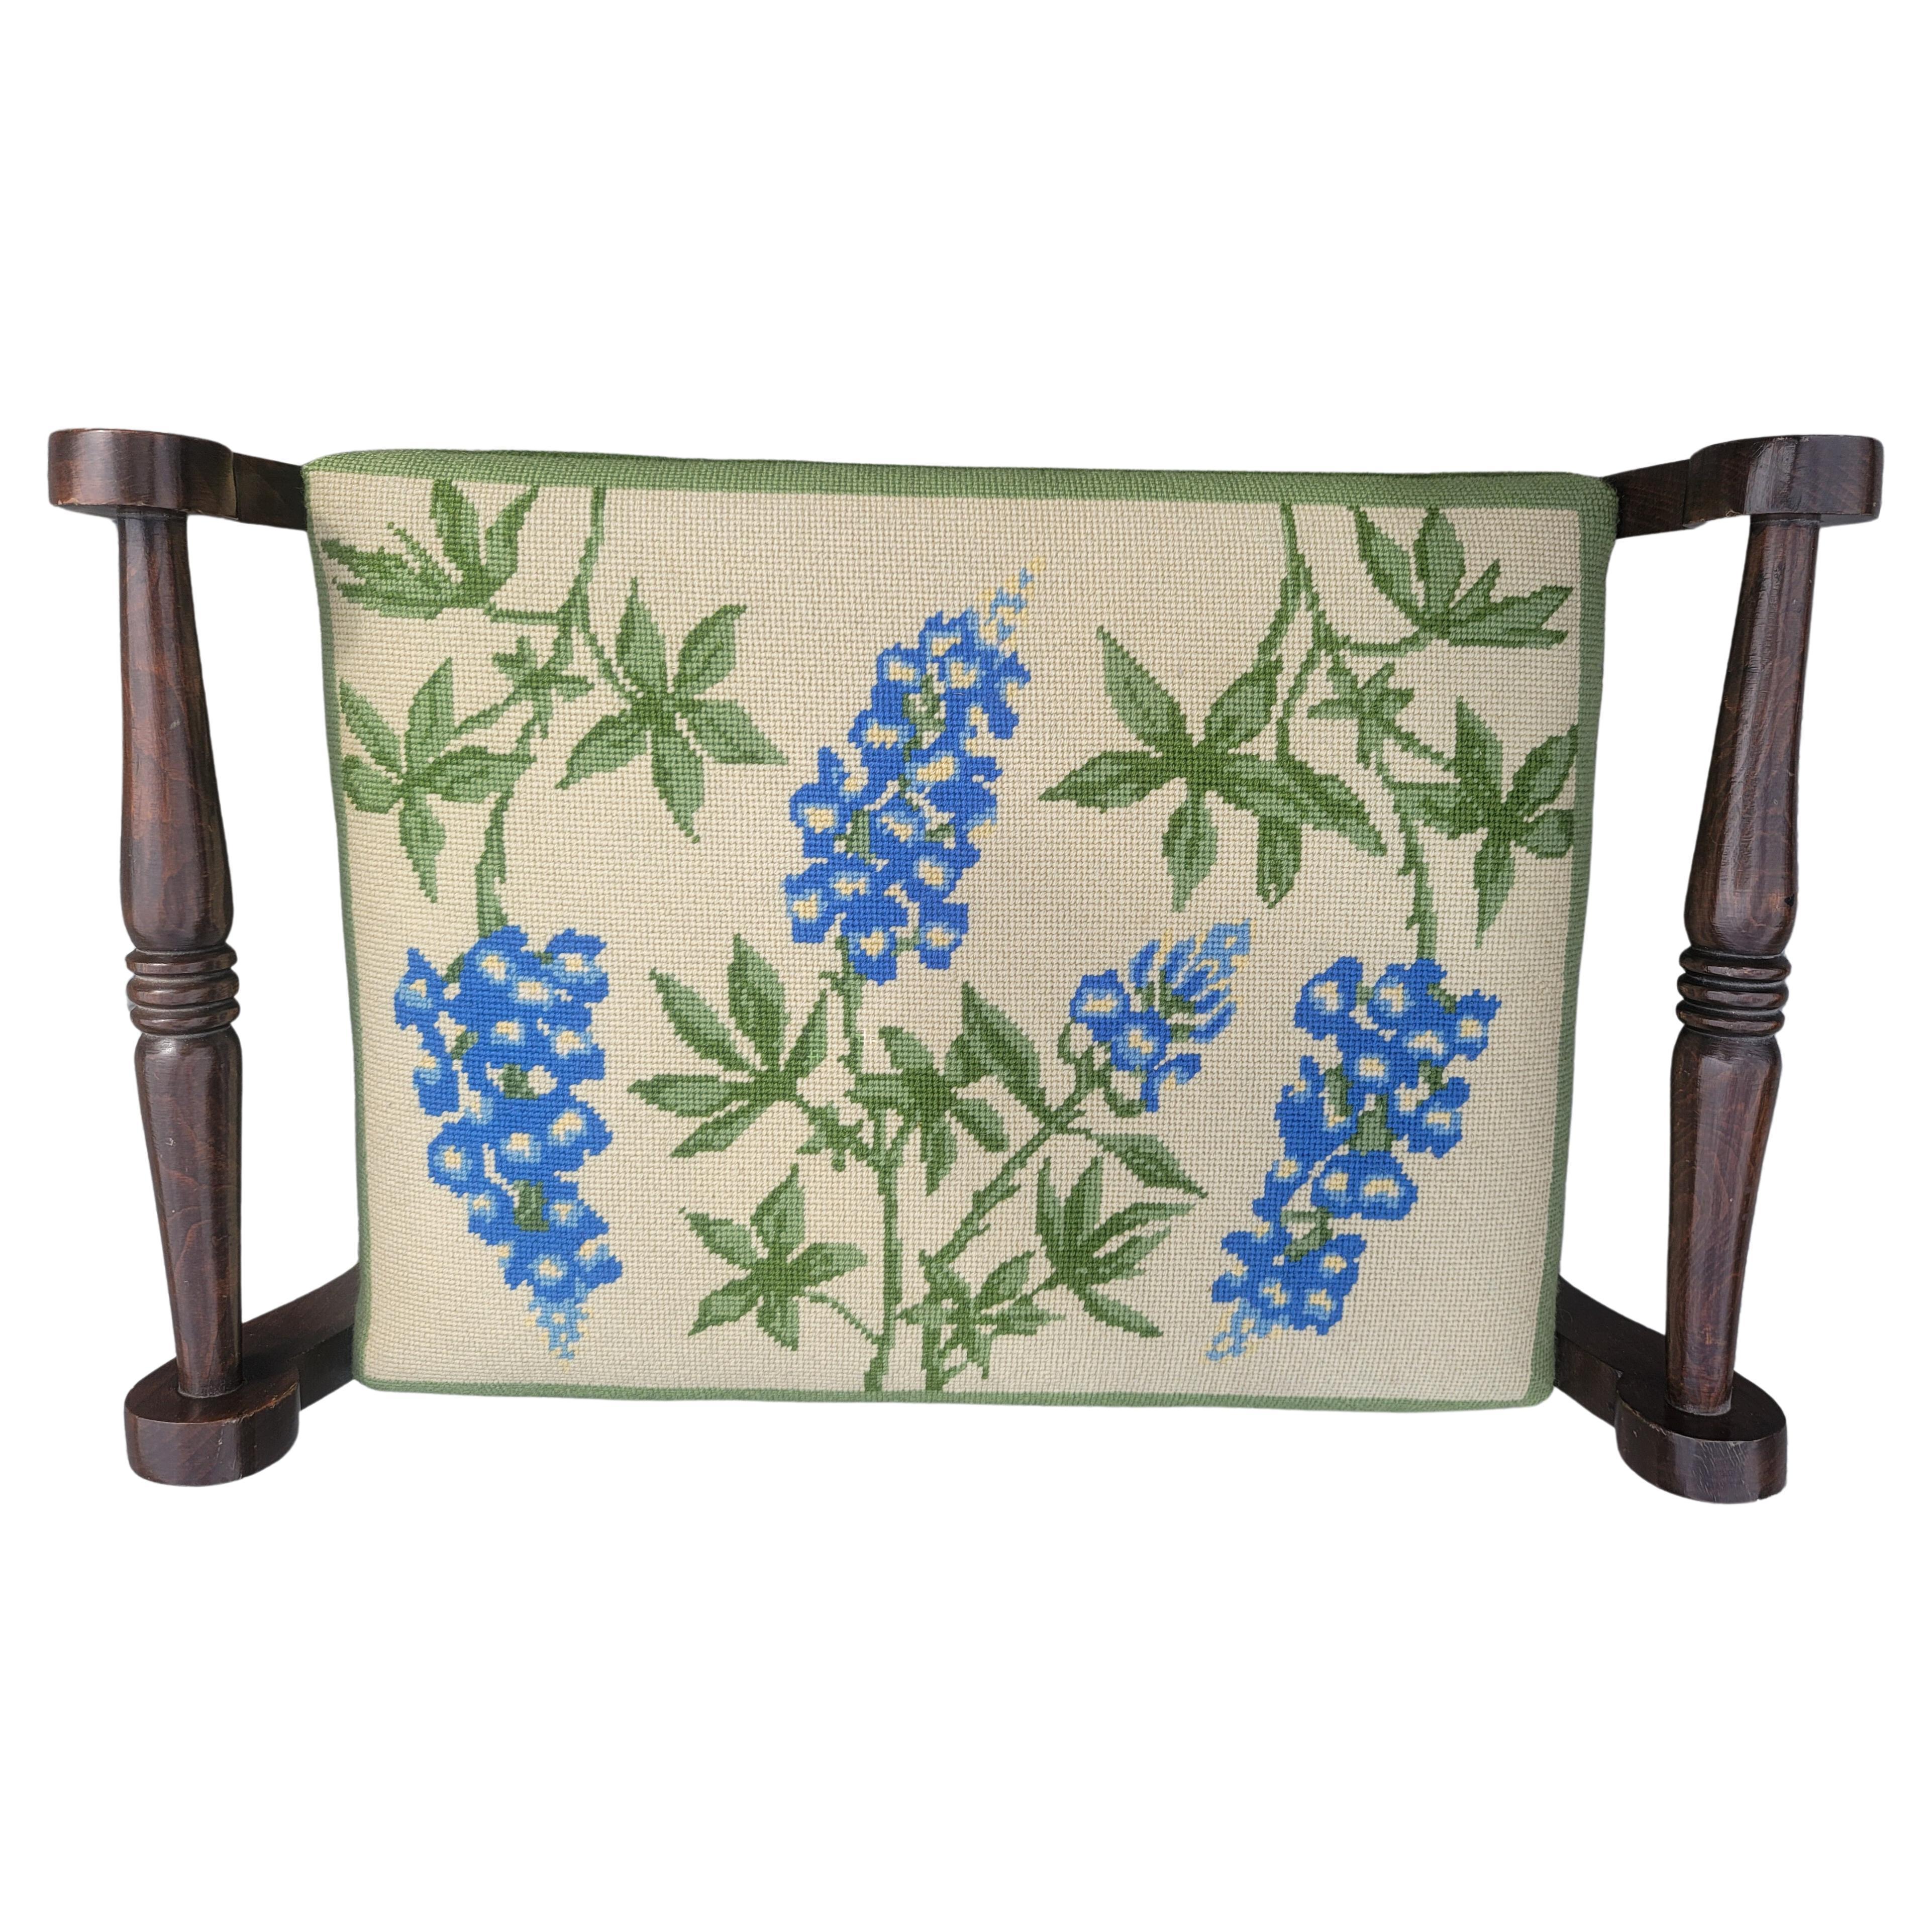 Upholstery Antique Edwardian Oak Needlepoint Upholstered Stool Bench, Circa 1910s